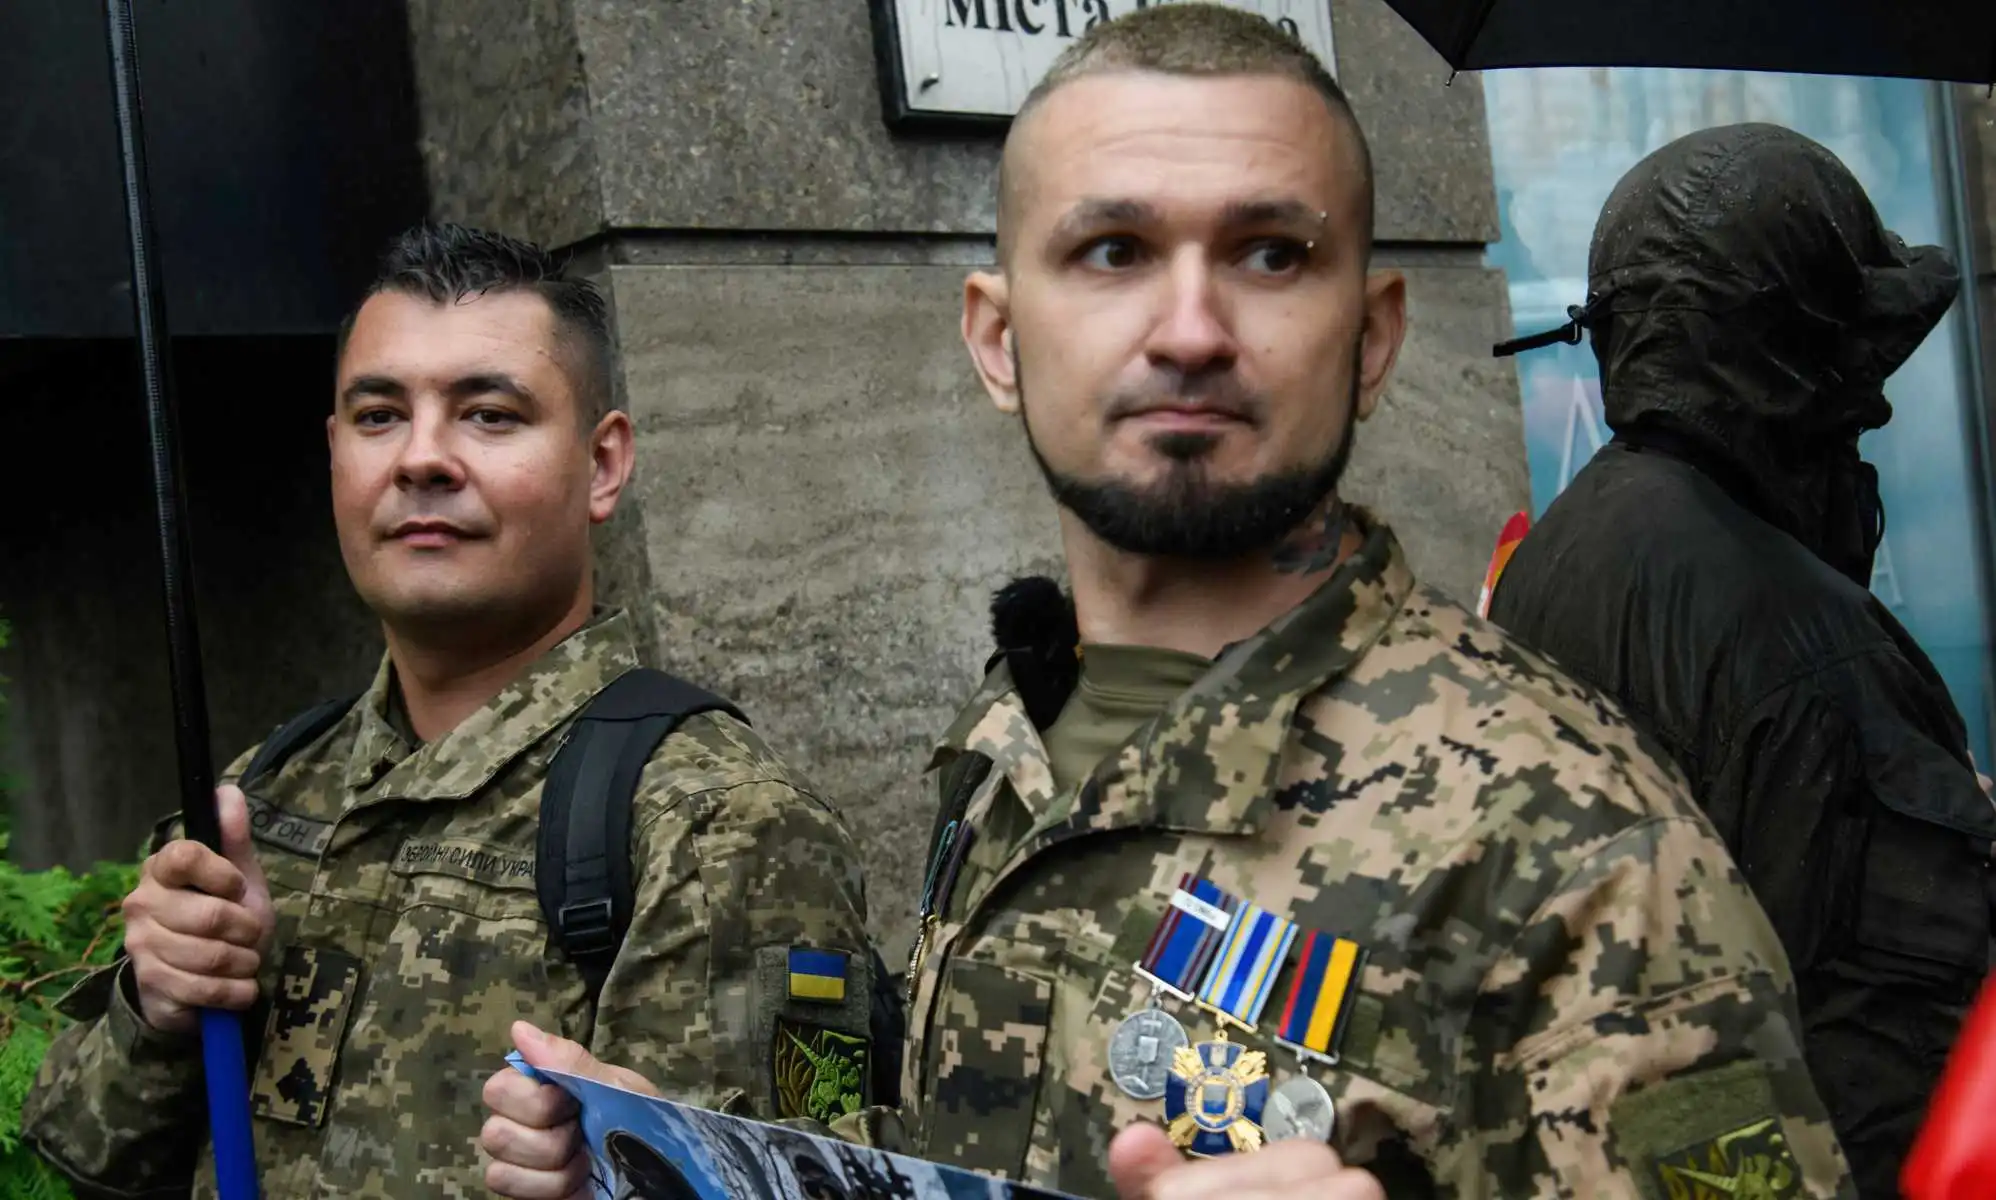 Soldados ucranianos LGBTQ+ participan en la Marcha por la Igualdad organizada por el Orgullo de Kiev